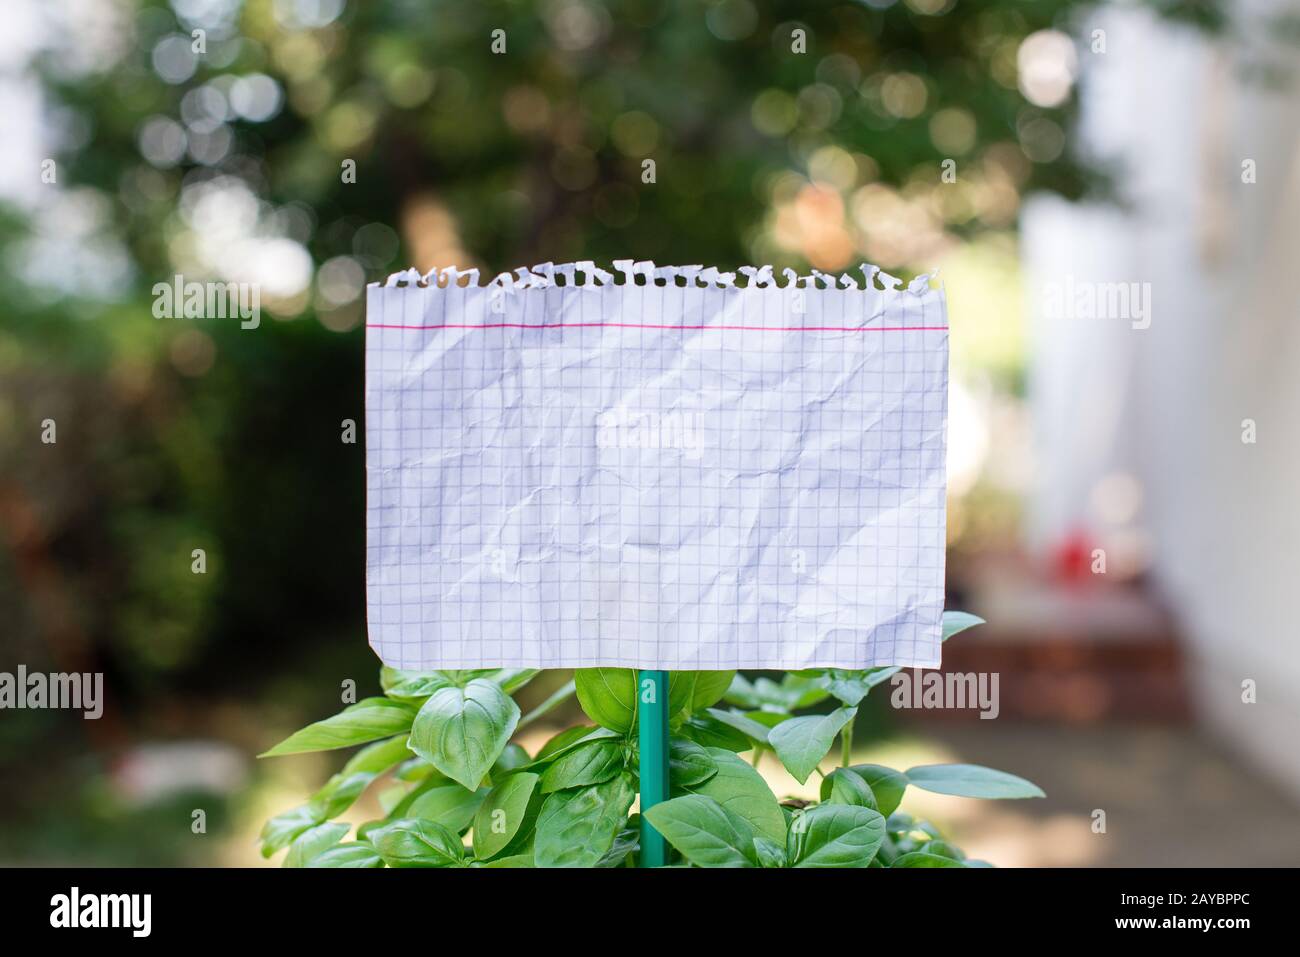 Cartoncino di carta comune attaccato ad un bastone e inserito nelle piante frondosi. Il foglio bianco vuoto viene posto nelle foglie di h verde Foto Stock